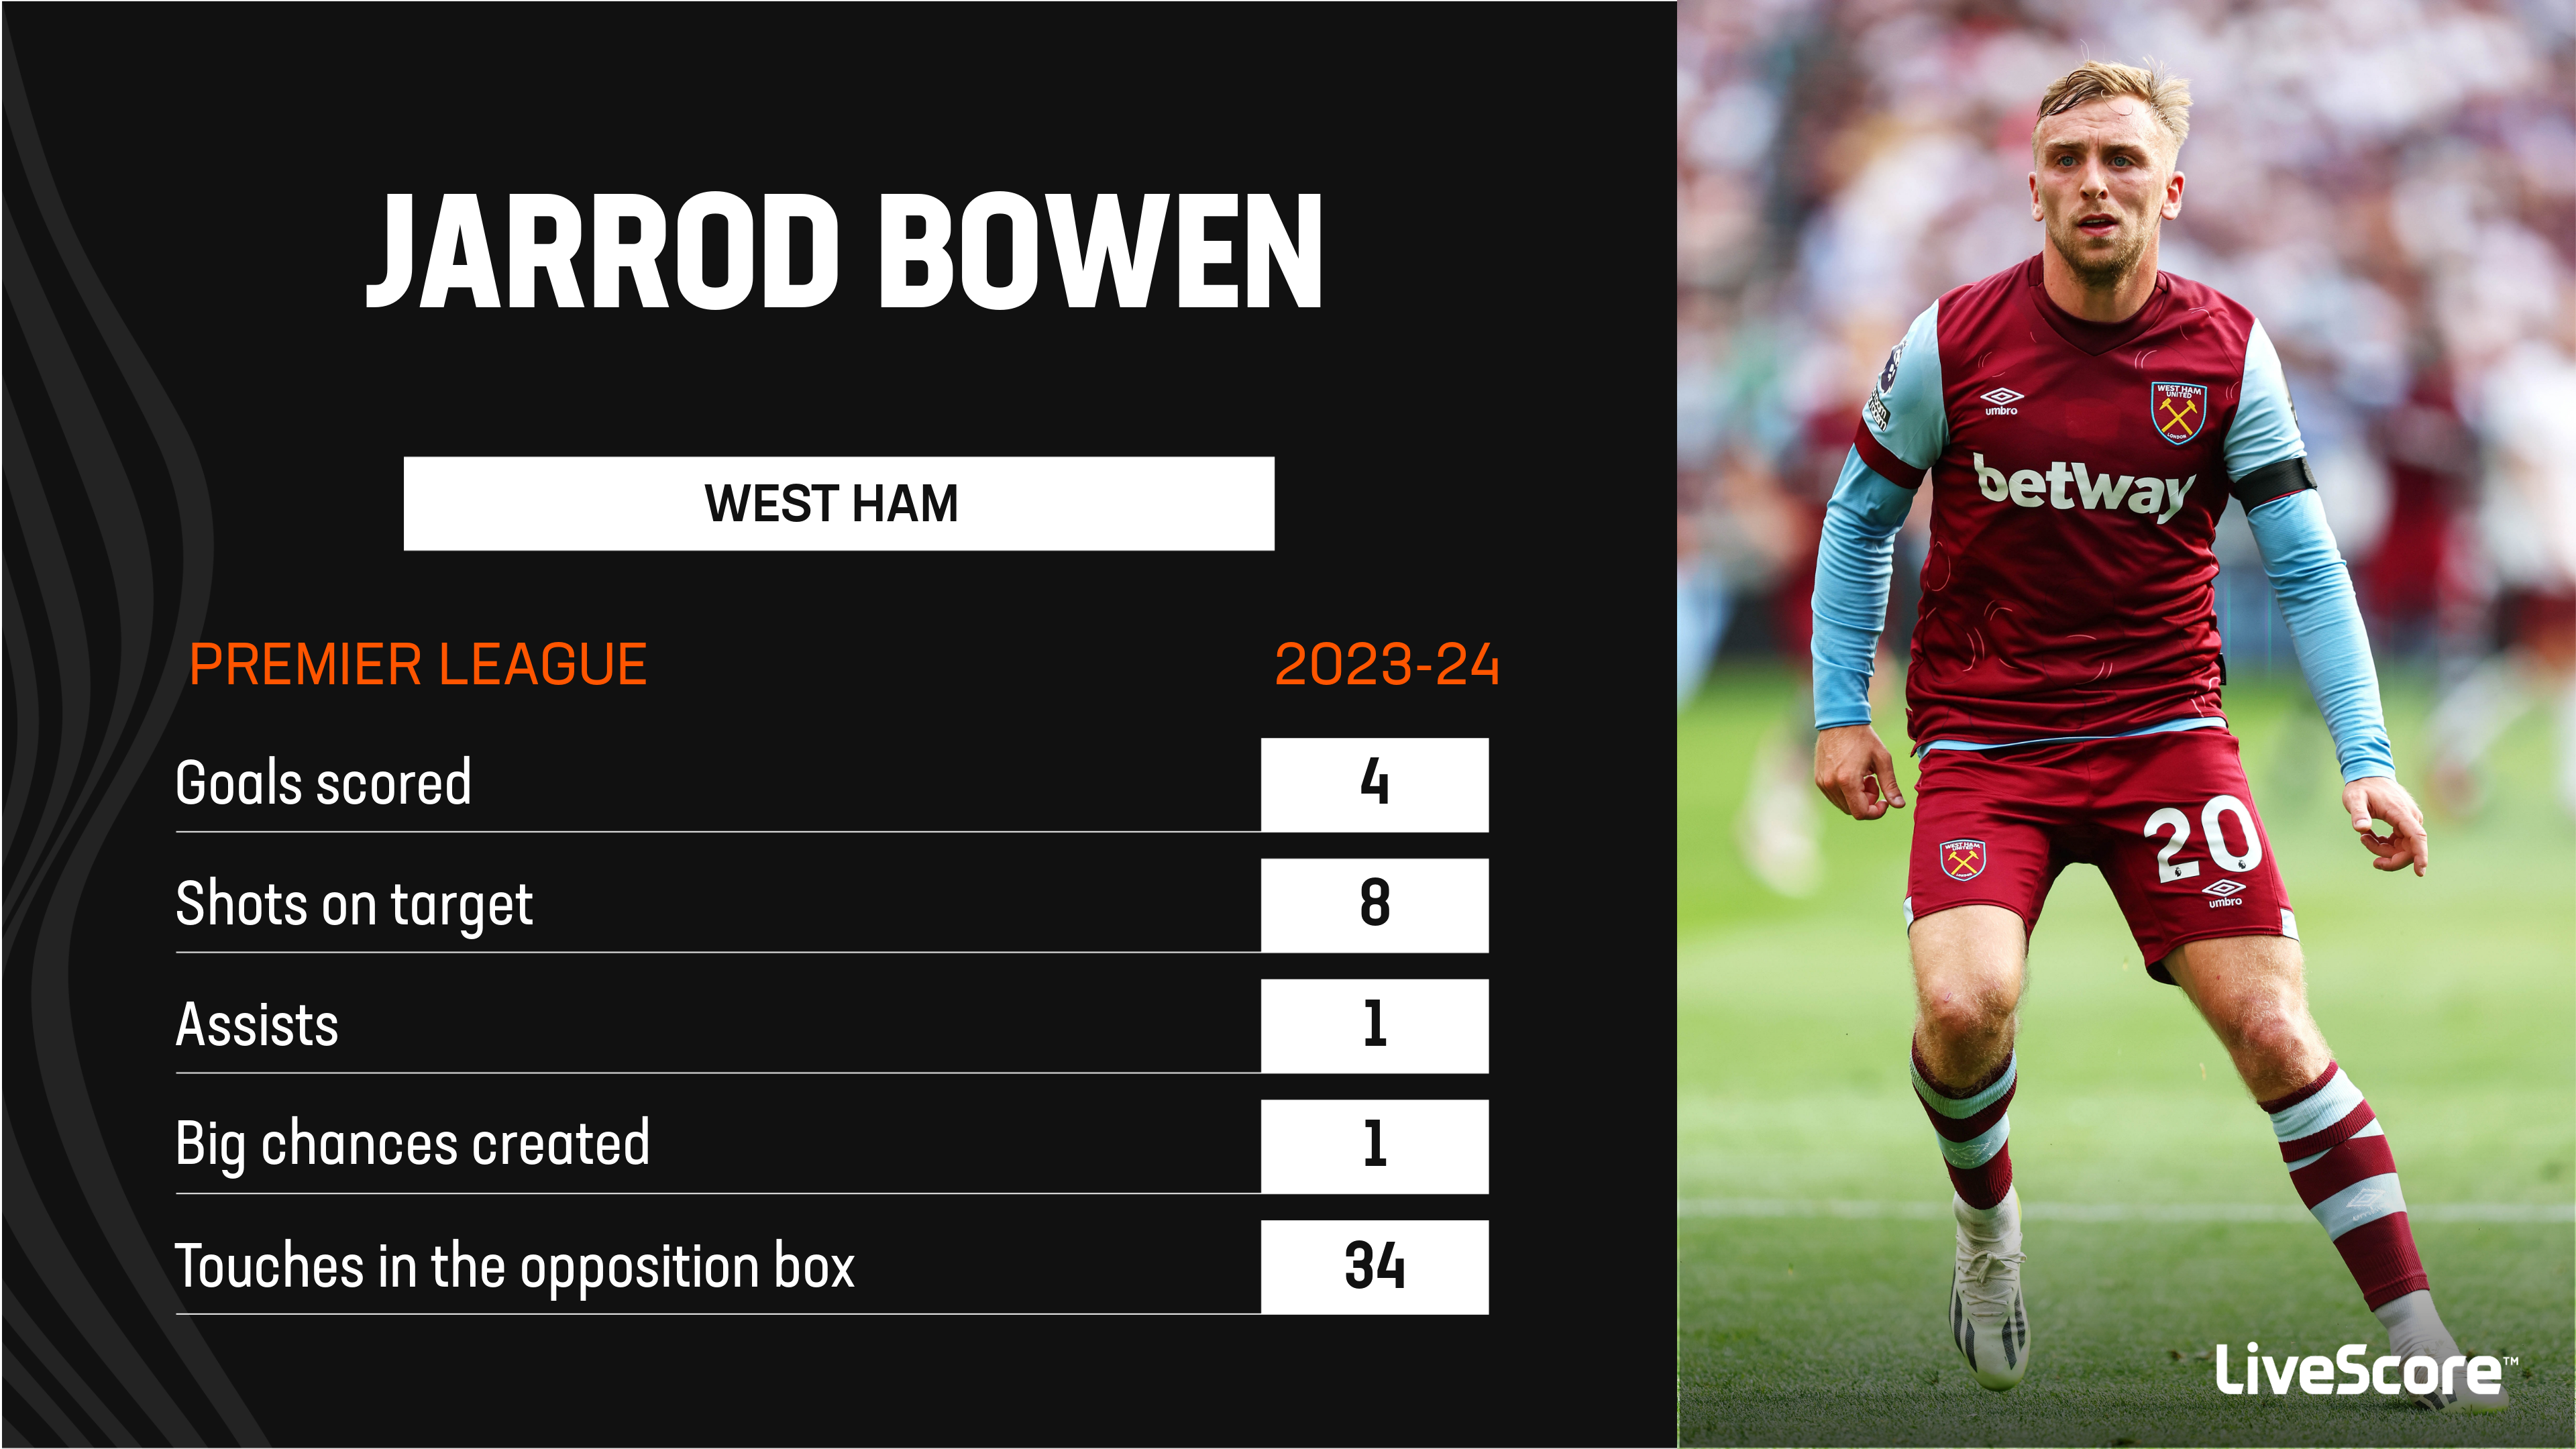 Tottenham 1-2 West Ham: Jarrod Bowen and James Ward-Prowse score